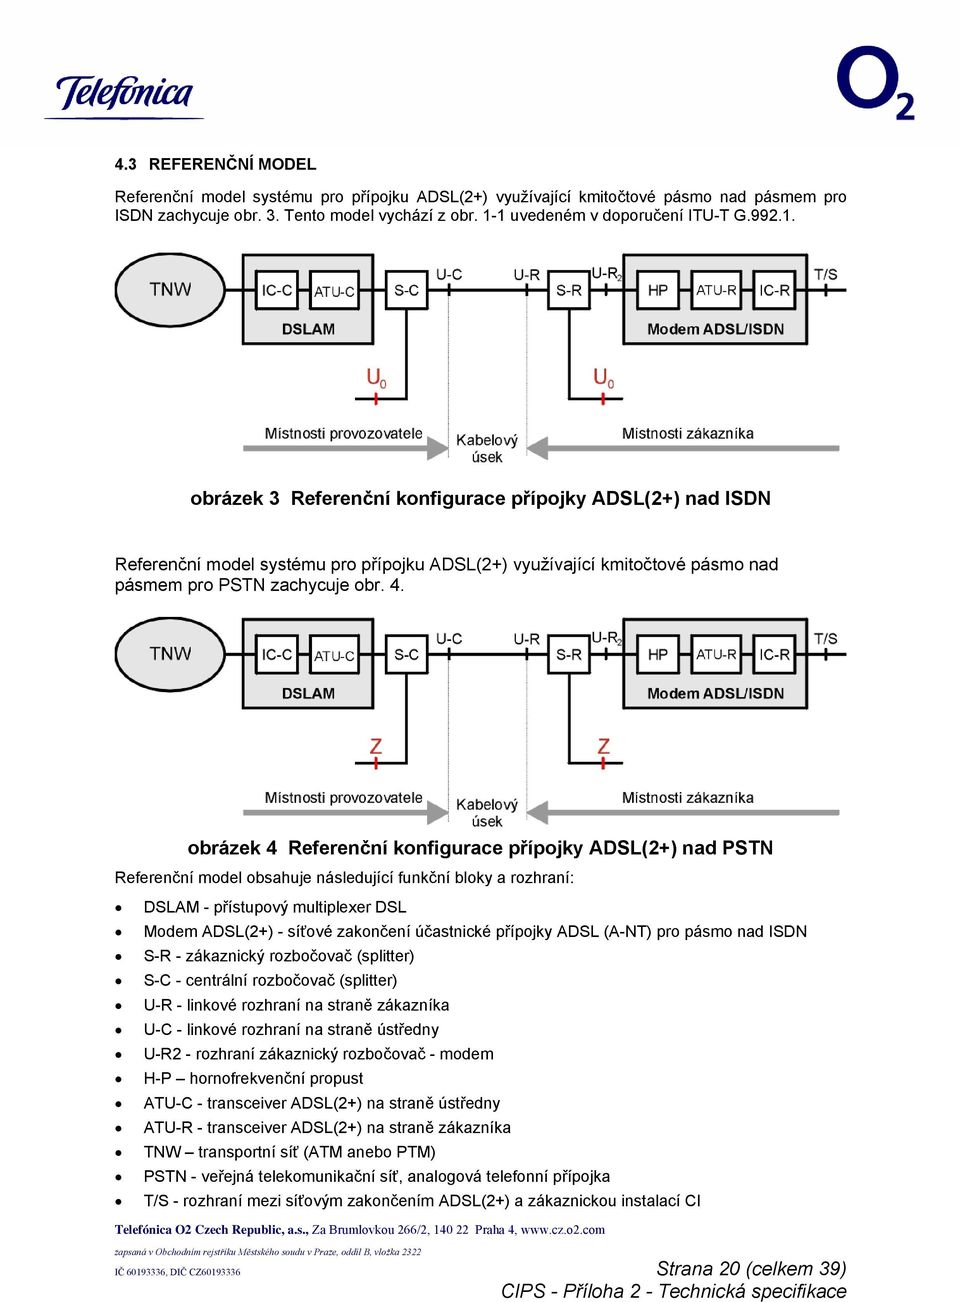 obrázek 4 Referenční konfigurace přípojky ADSL(2+) nad PSTN Referenční model obsahuje následující funkční bloky a rozhraní: DSLAM - přístupový multiplexer DSL Modem ADSL(2+) - síťové zakončení